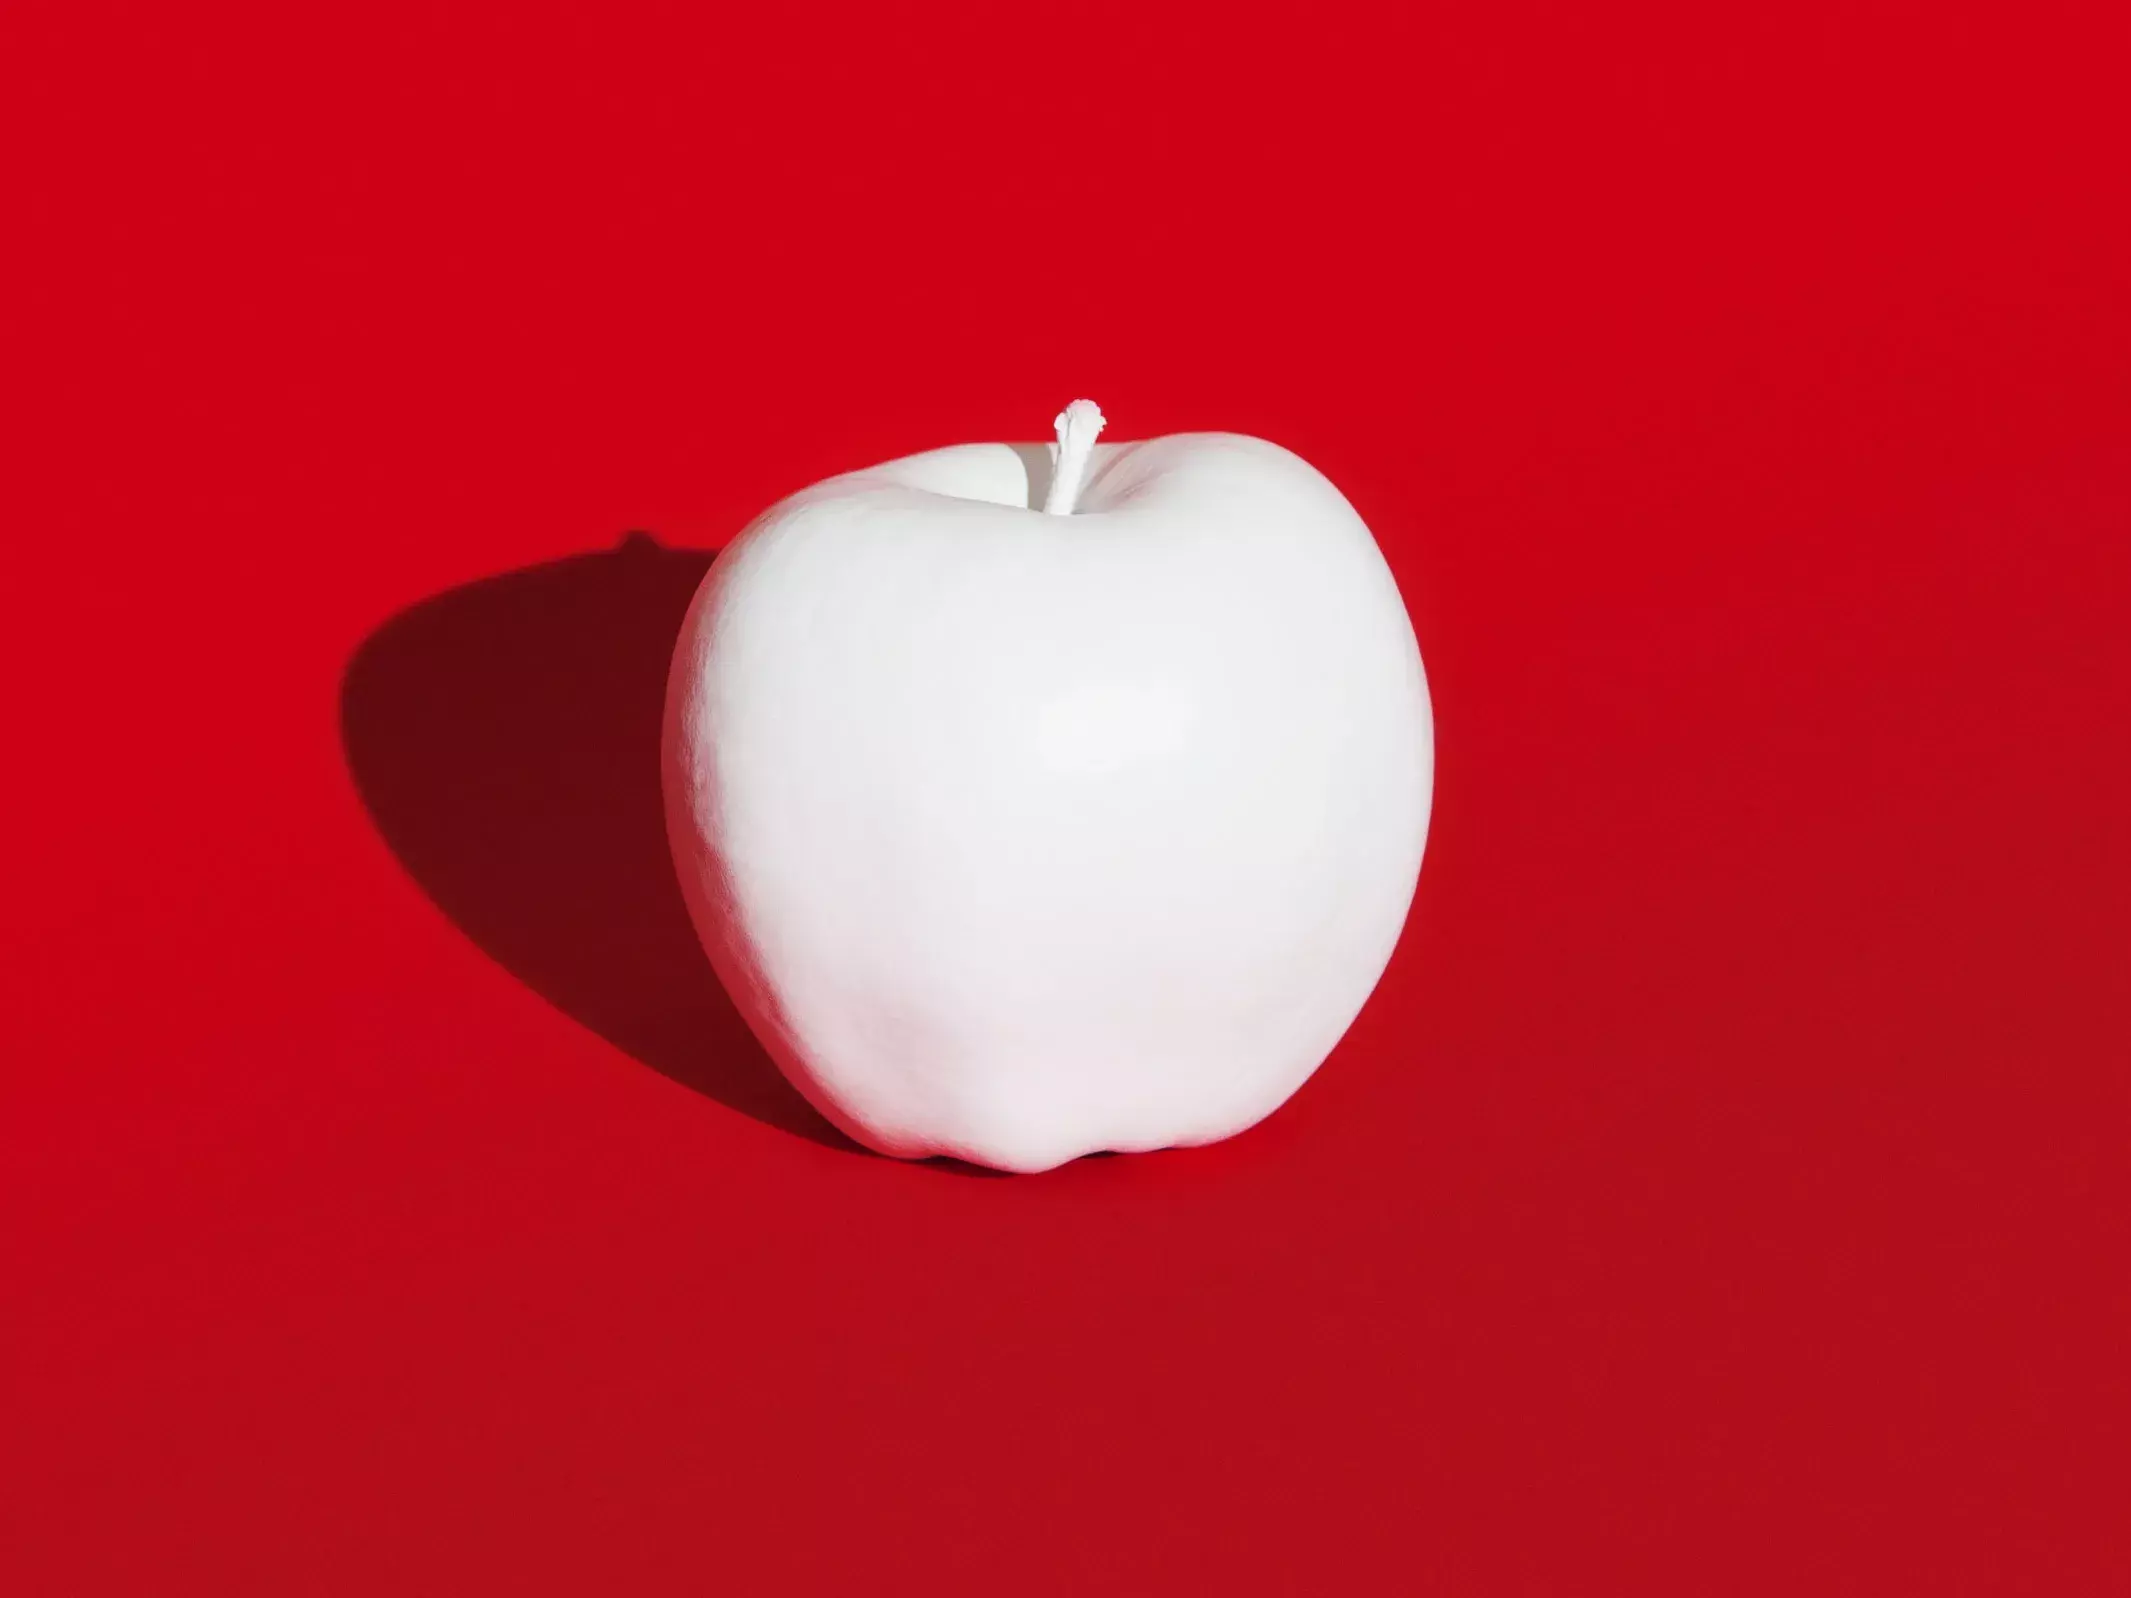 Apple vrea sa de detina drepturile de autor asupra imaginii merelor din intreaga lume 1